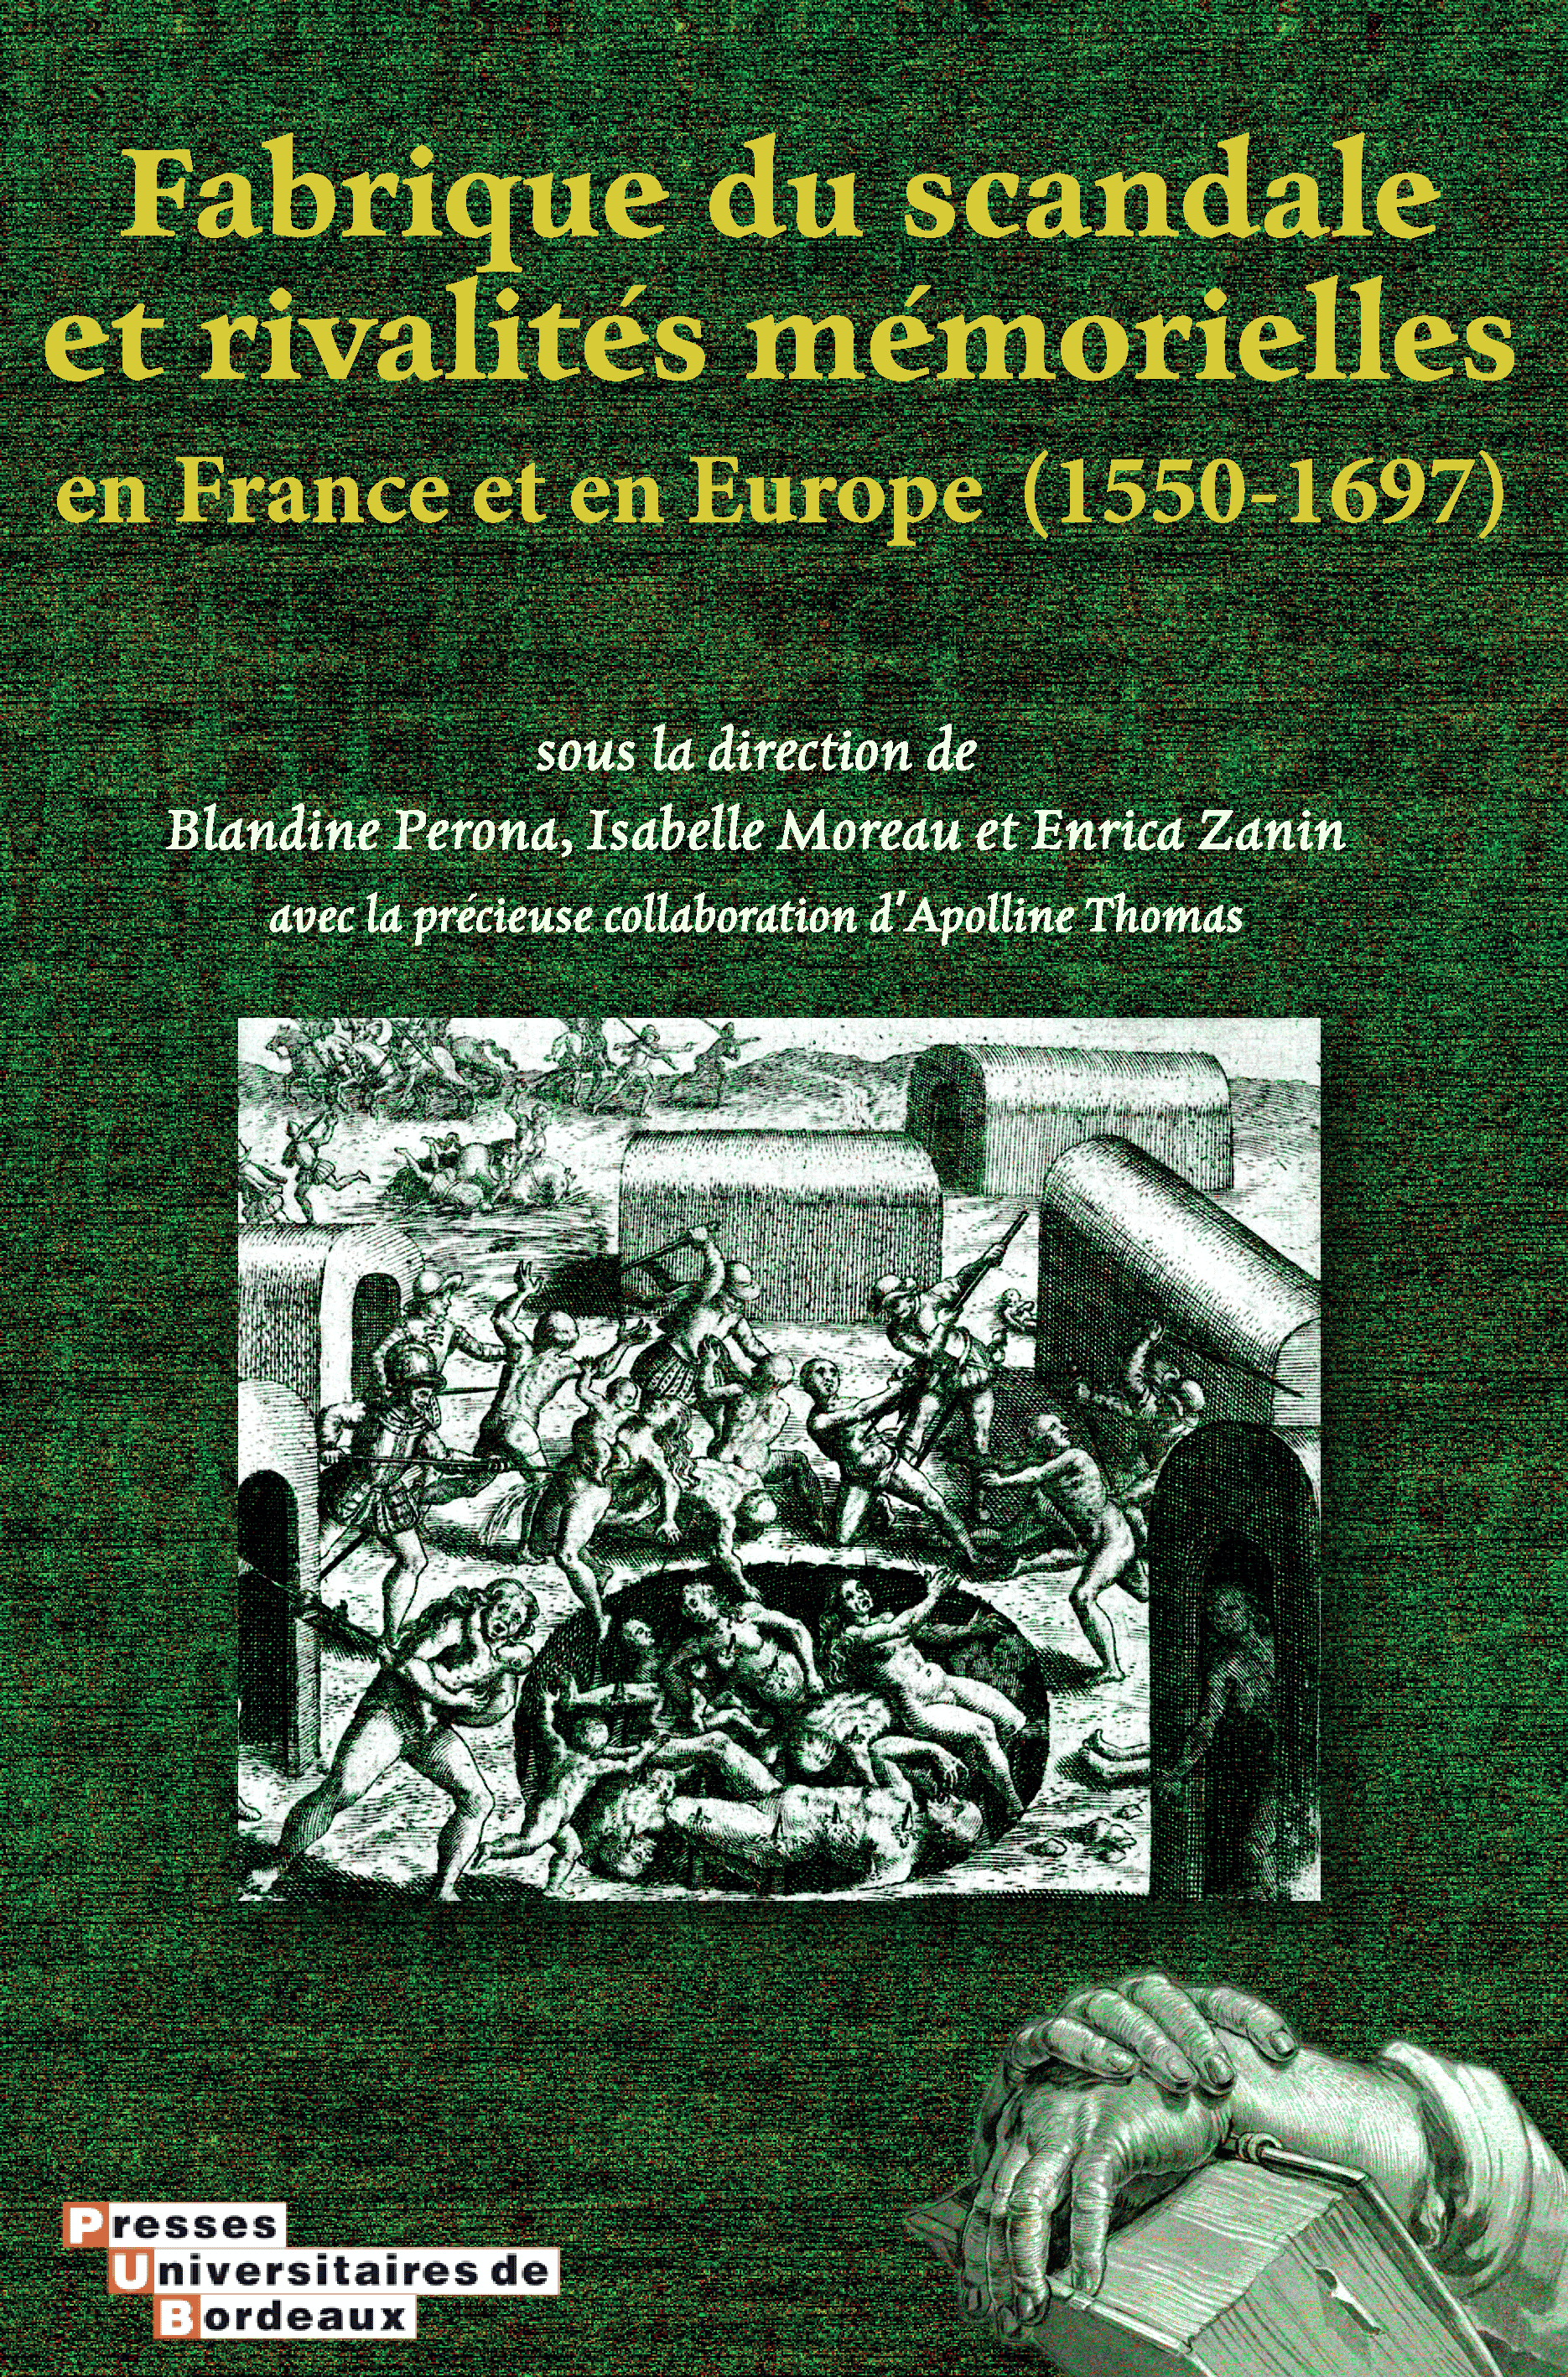 accès au livre Fabrique du scandale et rivalités mémorielles (1550-1697)